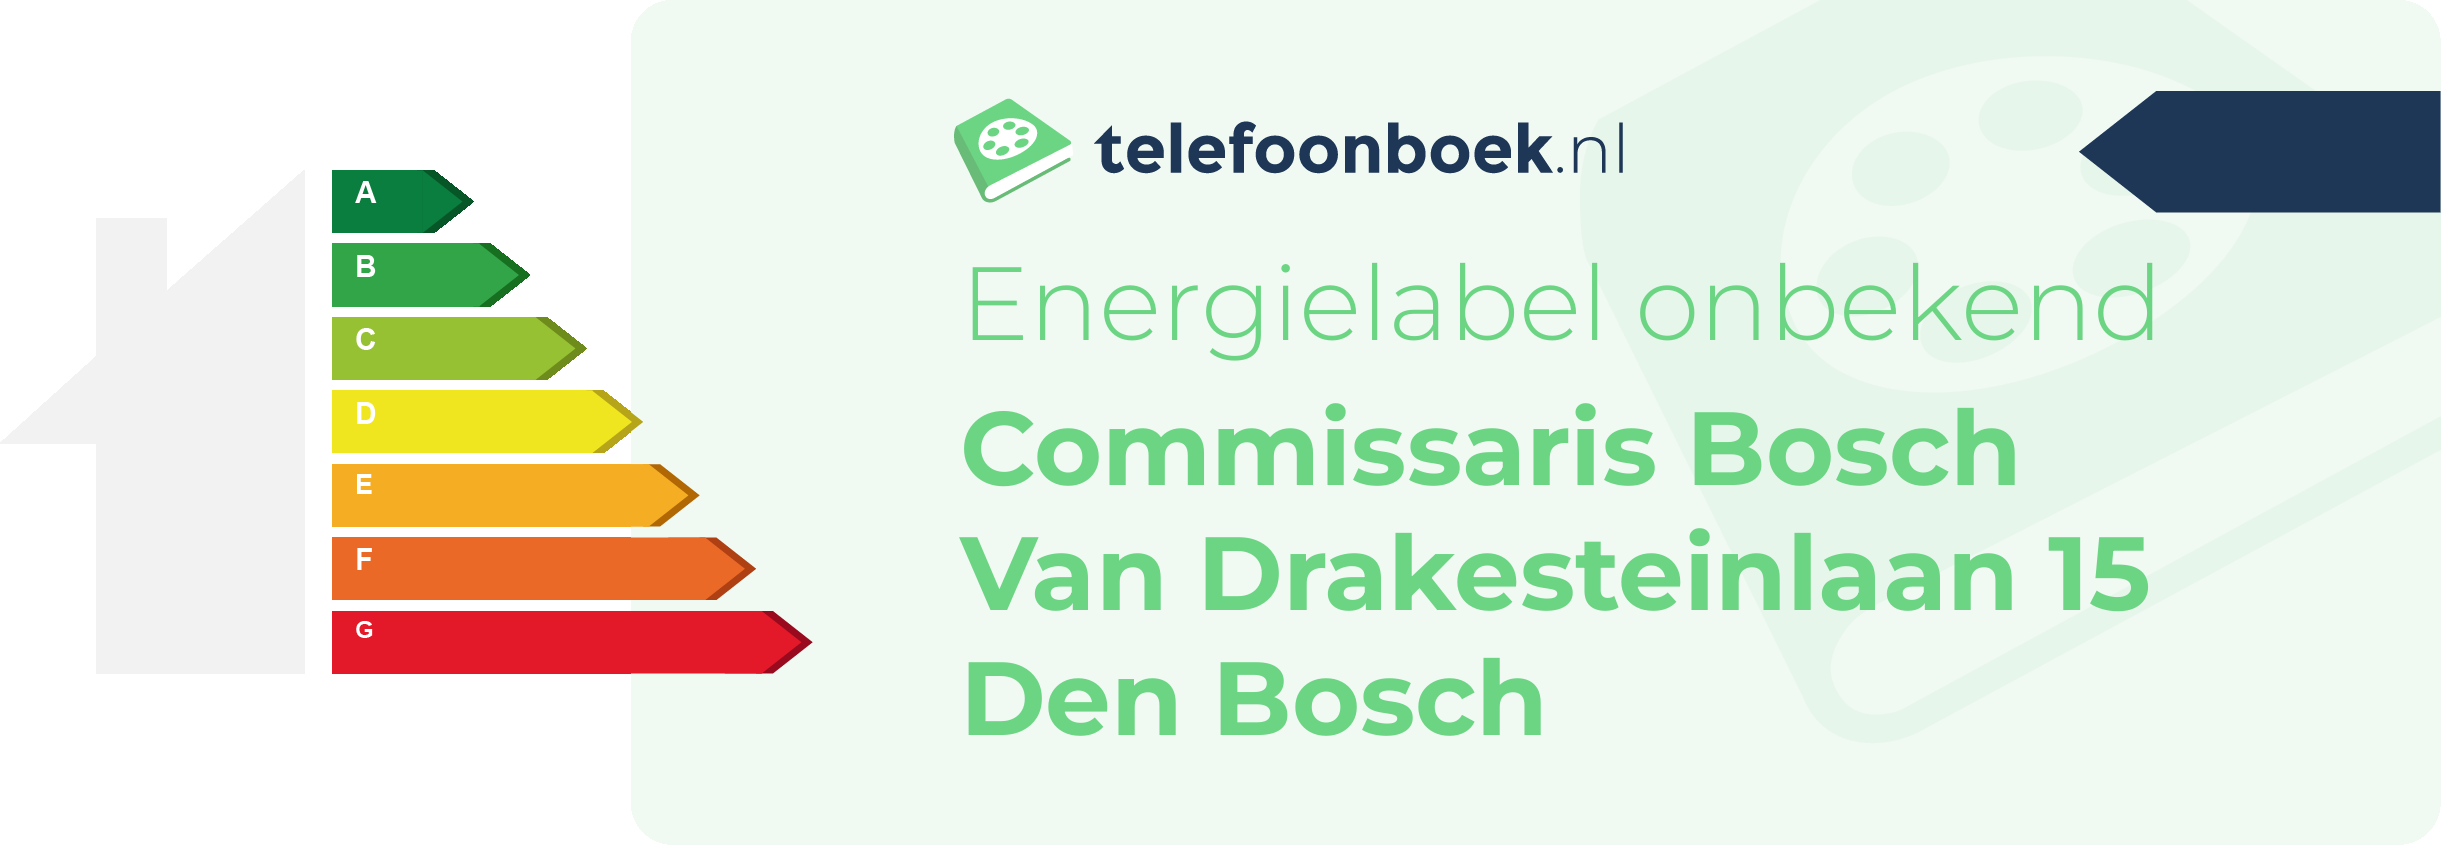 Energielabel Commissaris Bosch Van Drakesteinlaan 15 Den Bosch